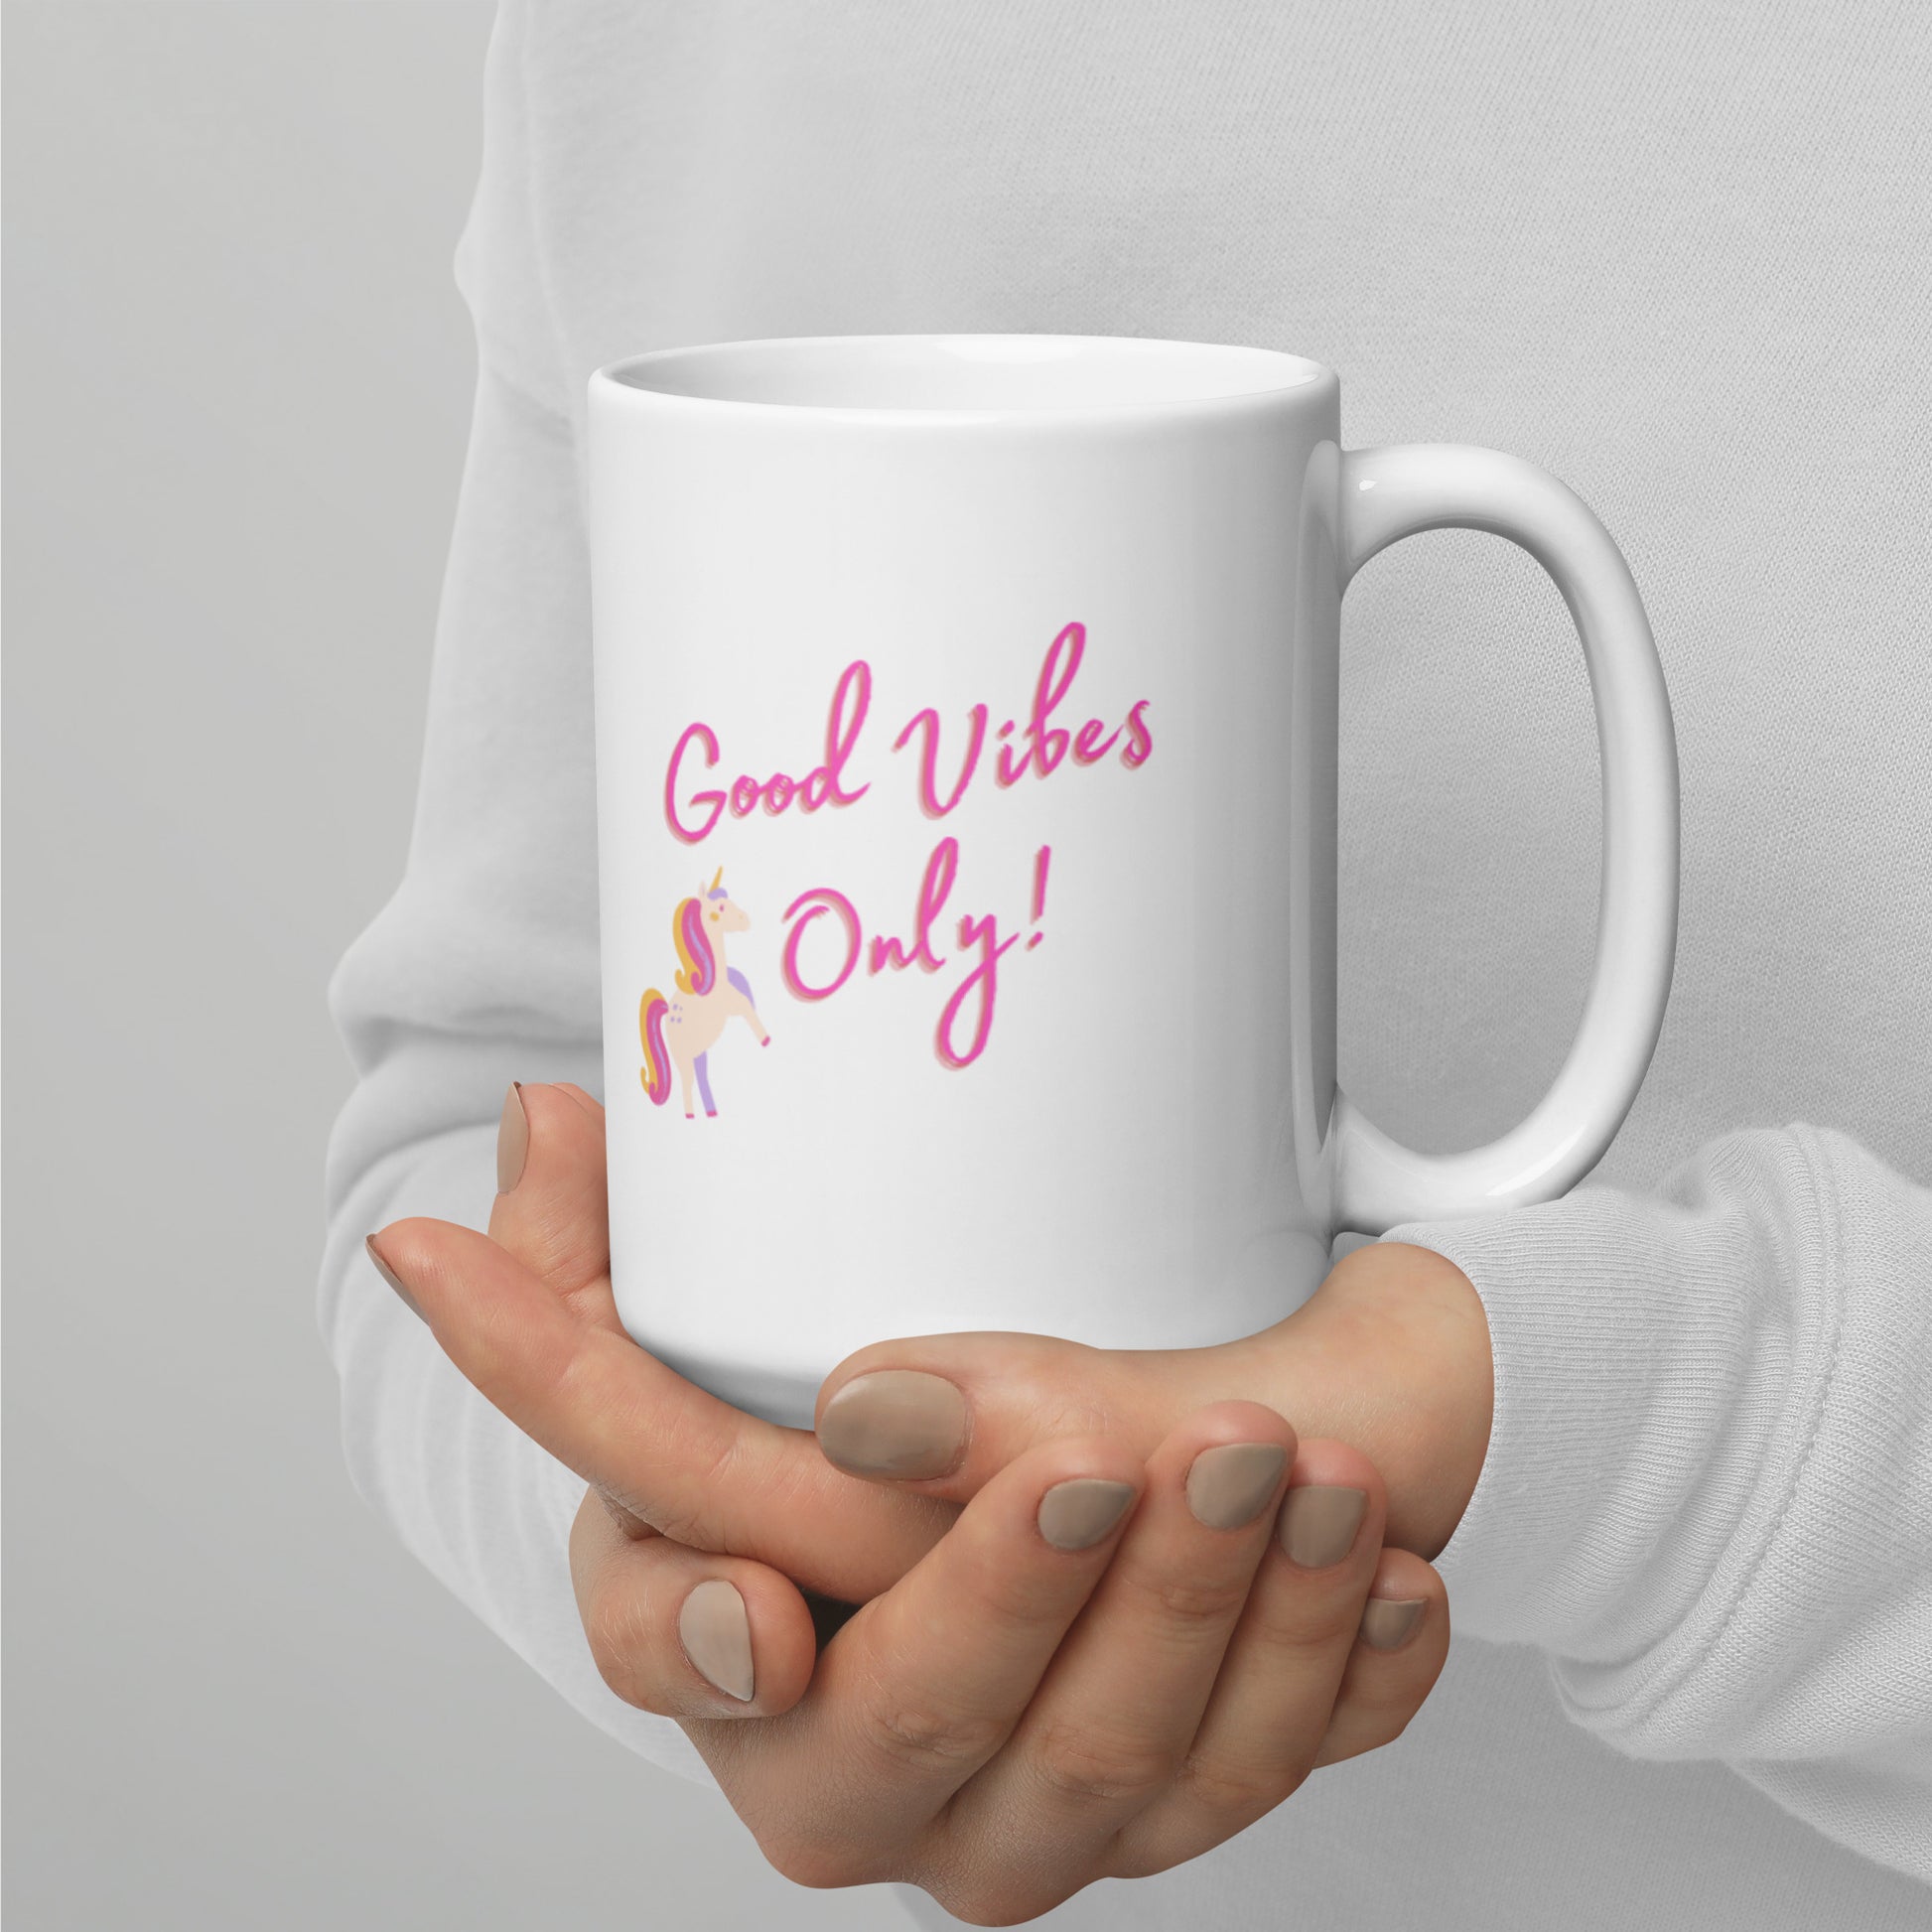 Unicorn Good Vibes Only Mug - The Good Life Vibe